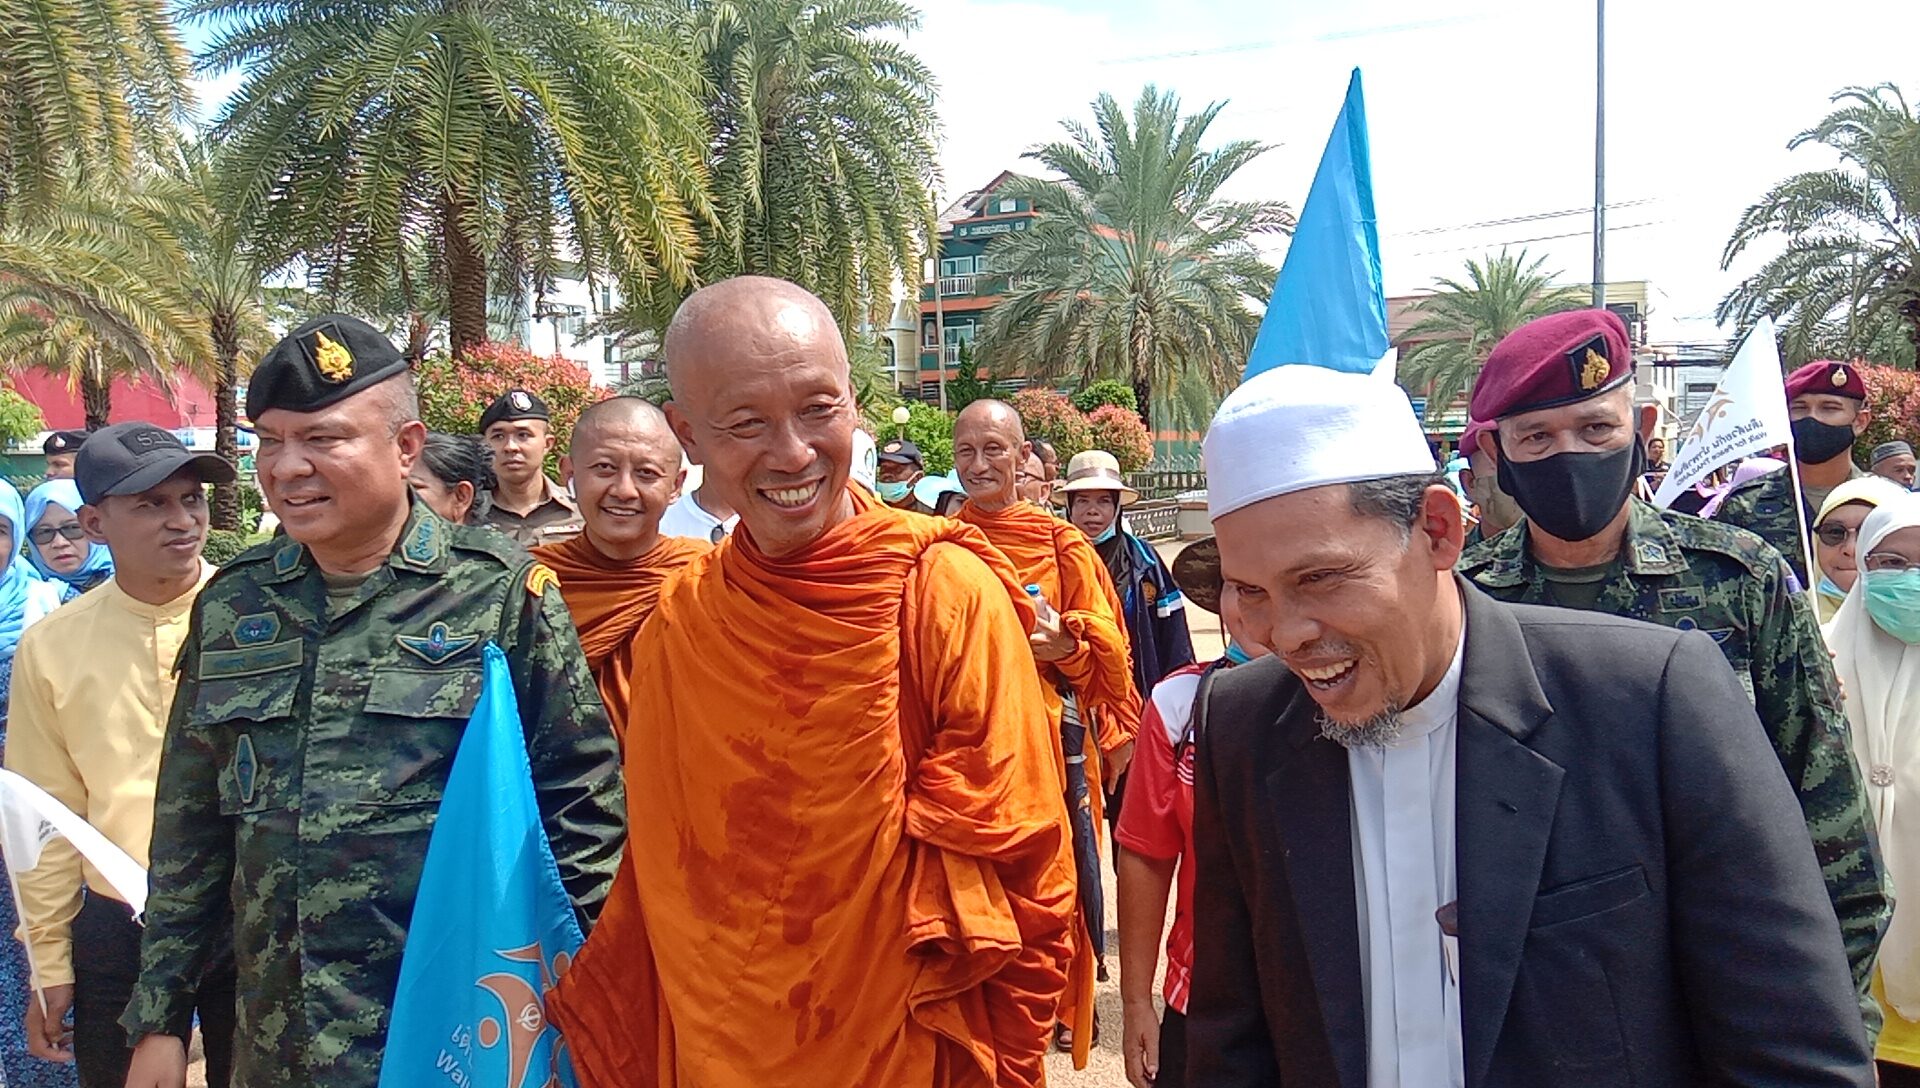 คณะพระธุดงค์เพื่อสันติภาพโลก เดินเท้าถึงปัตตานี รวม 5 ศาสนาสานพลังแห่งสันติภาพ